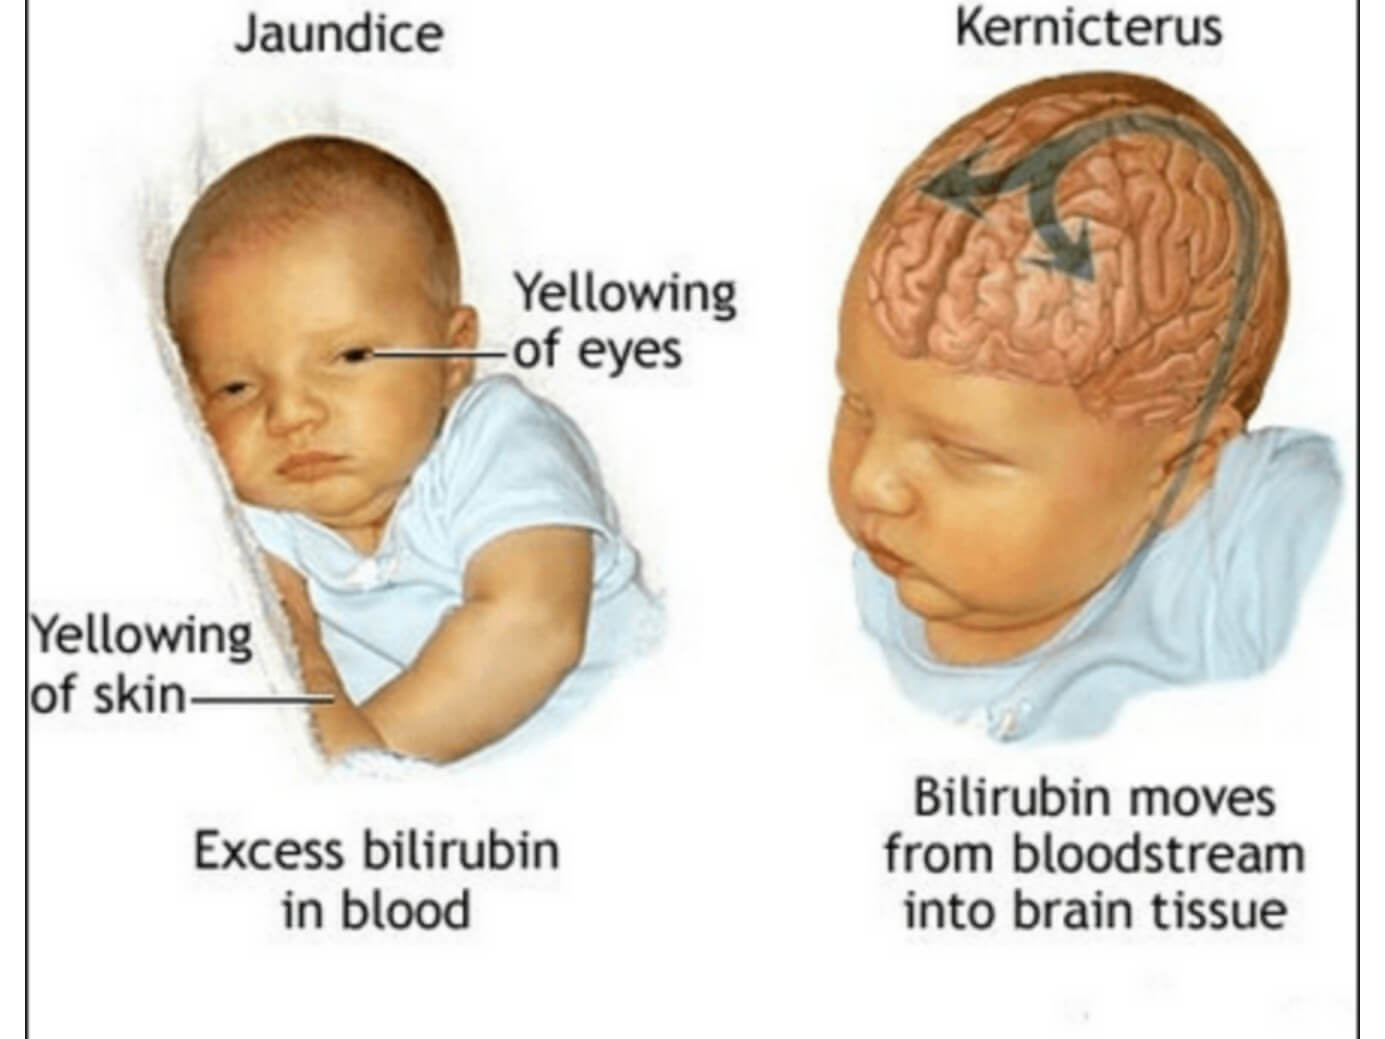 Билирубин при желтухе у новорожденных